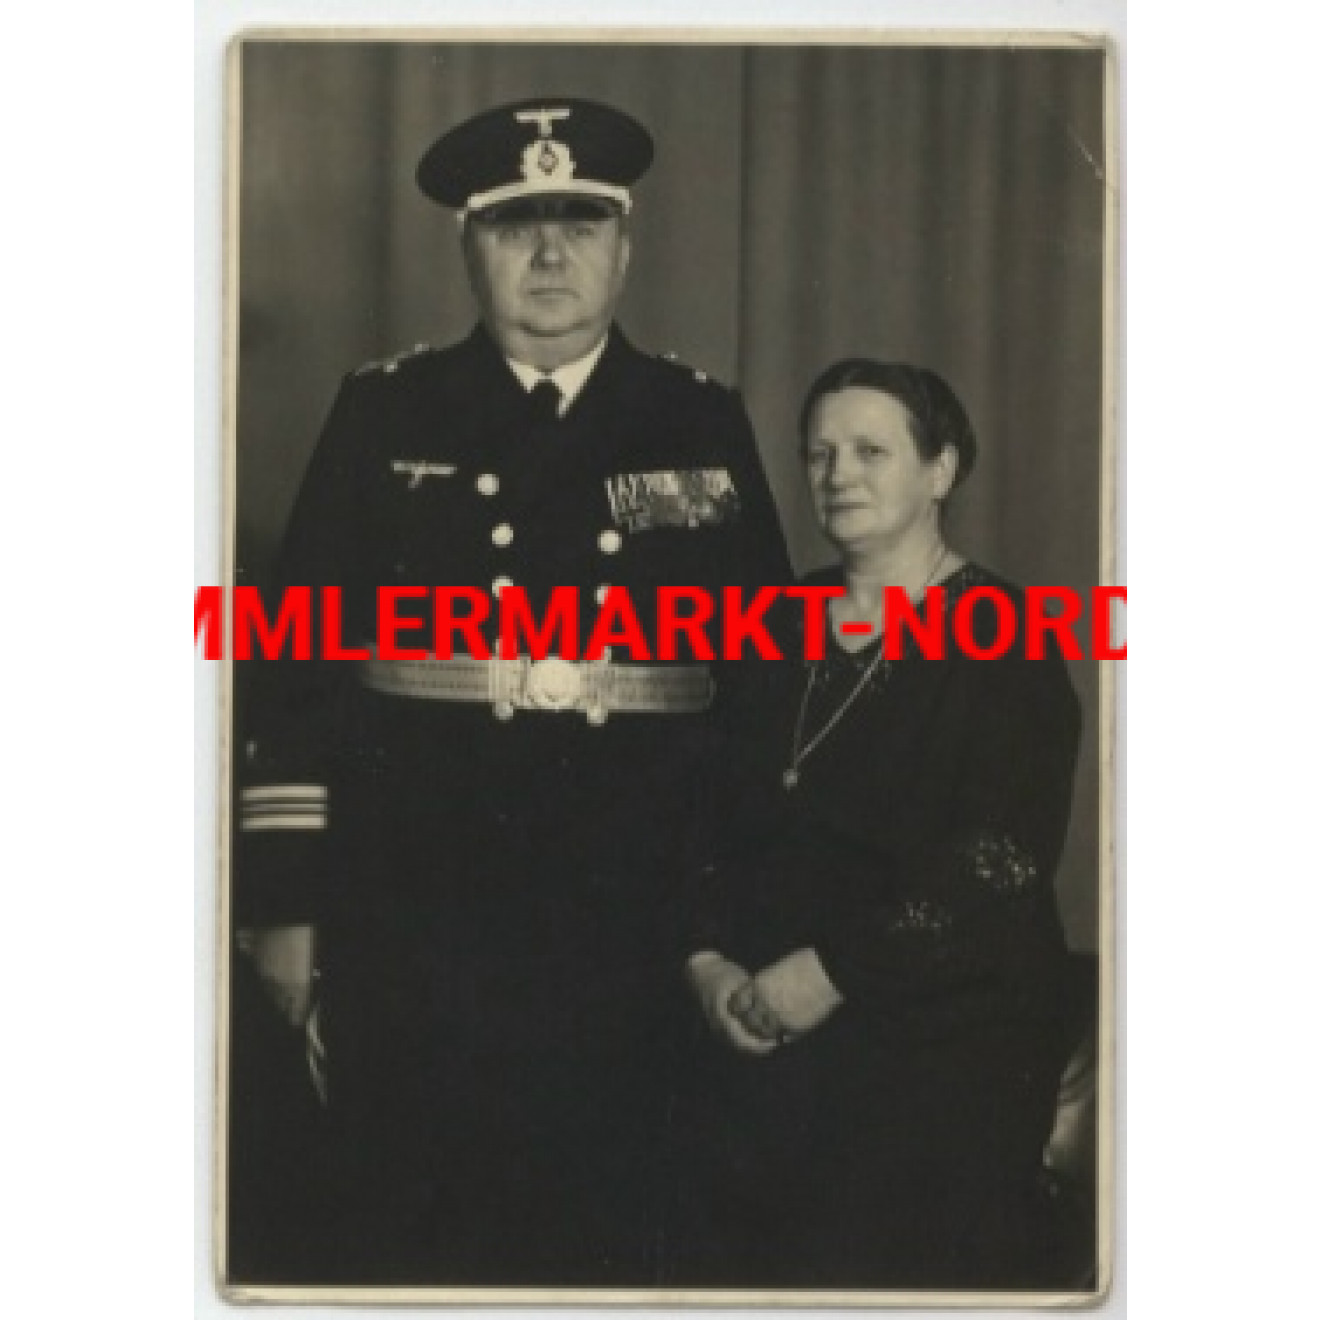 Offizier der Kriegsmarine (Ingenieur) mit großer Ordensspange